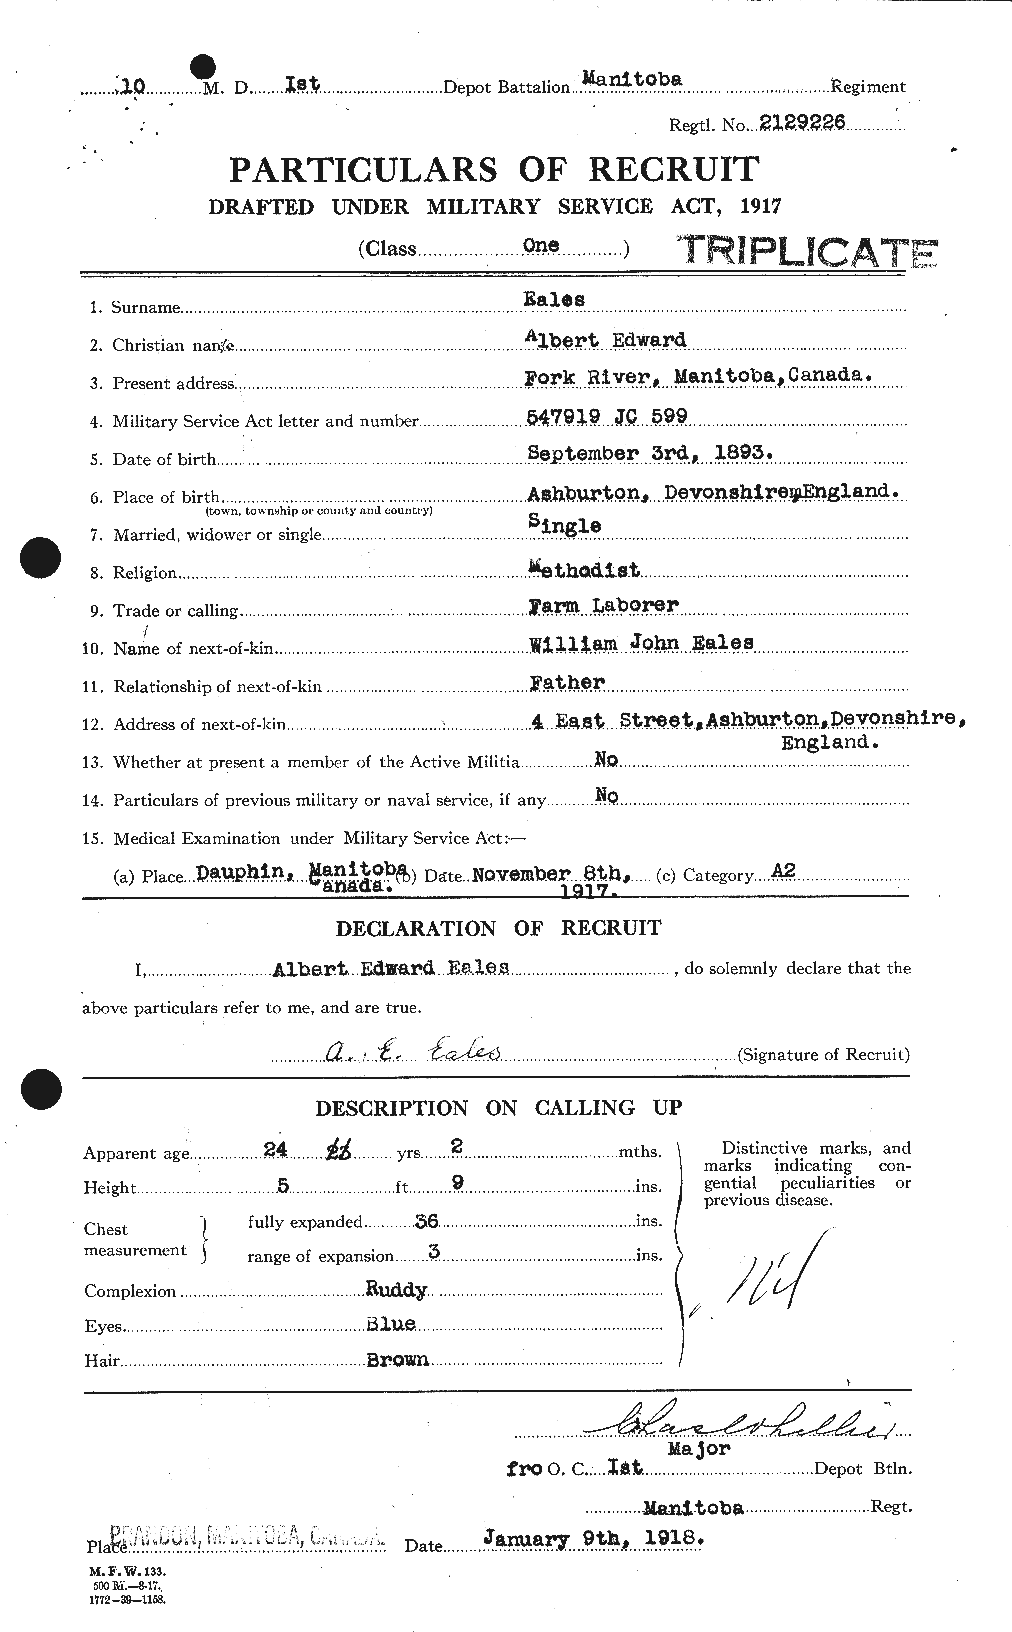 Dossiers du Personnel de la Première Guerre mondiale - CEC 308949a